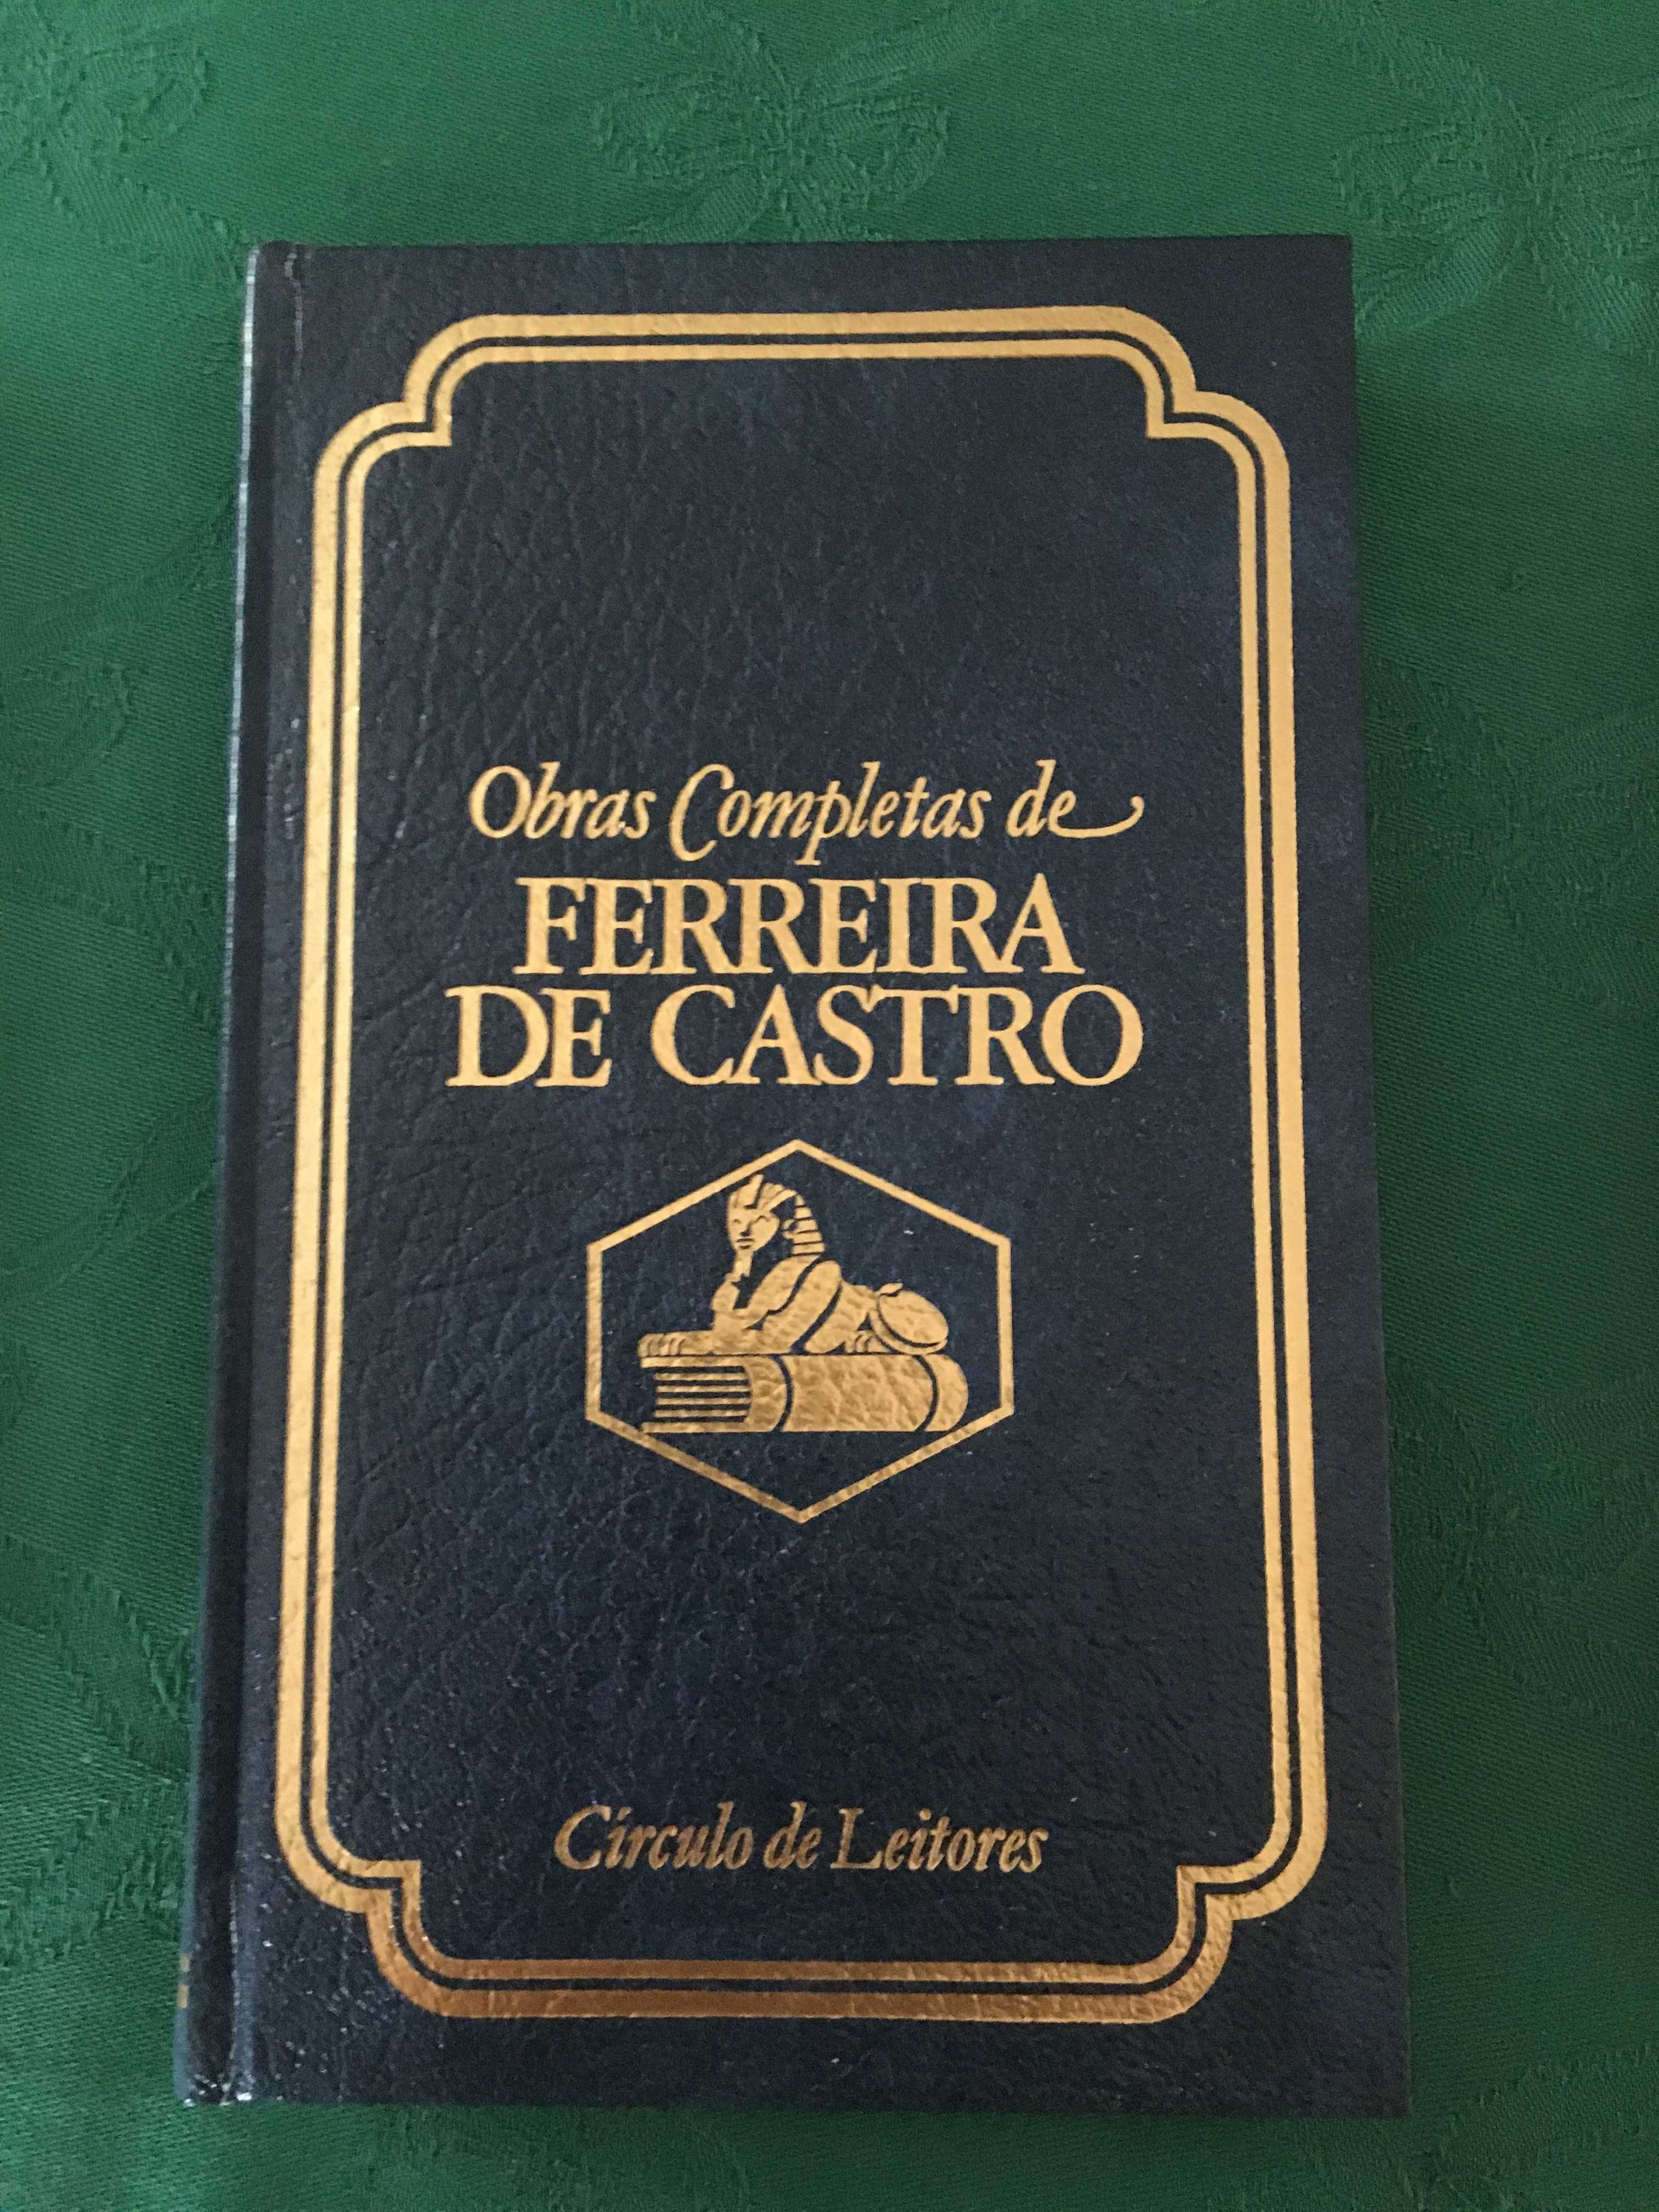 Obras completas Ferreira de Castro - 14 volumes